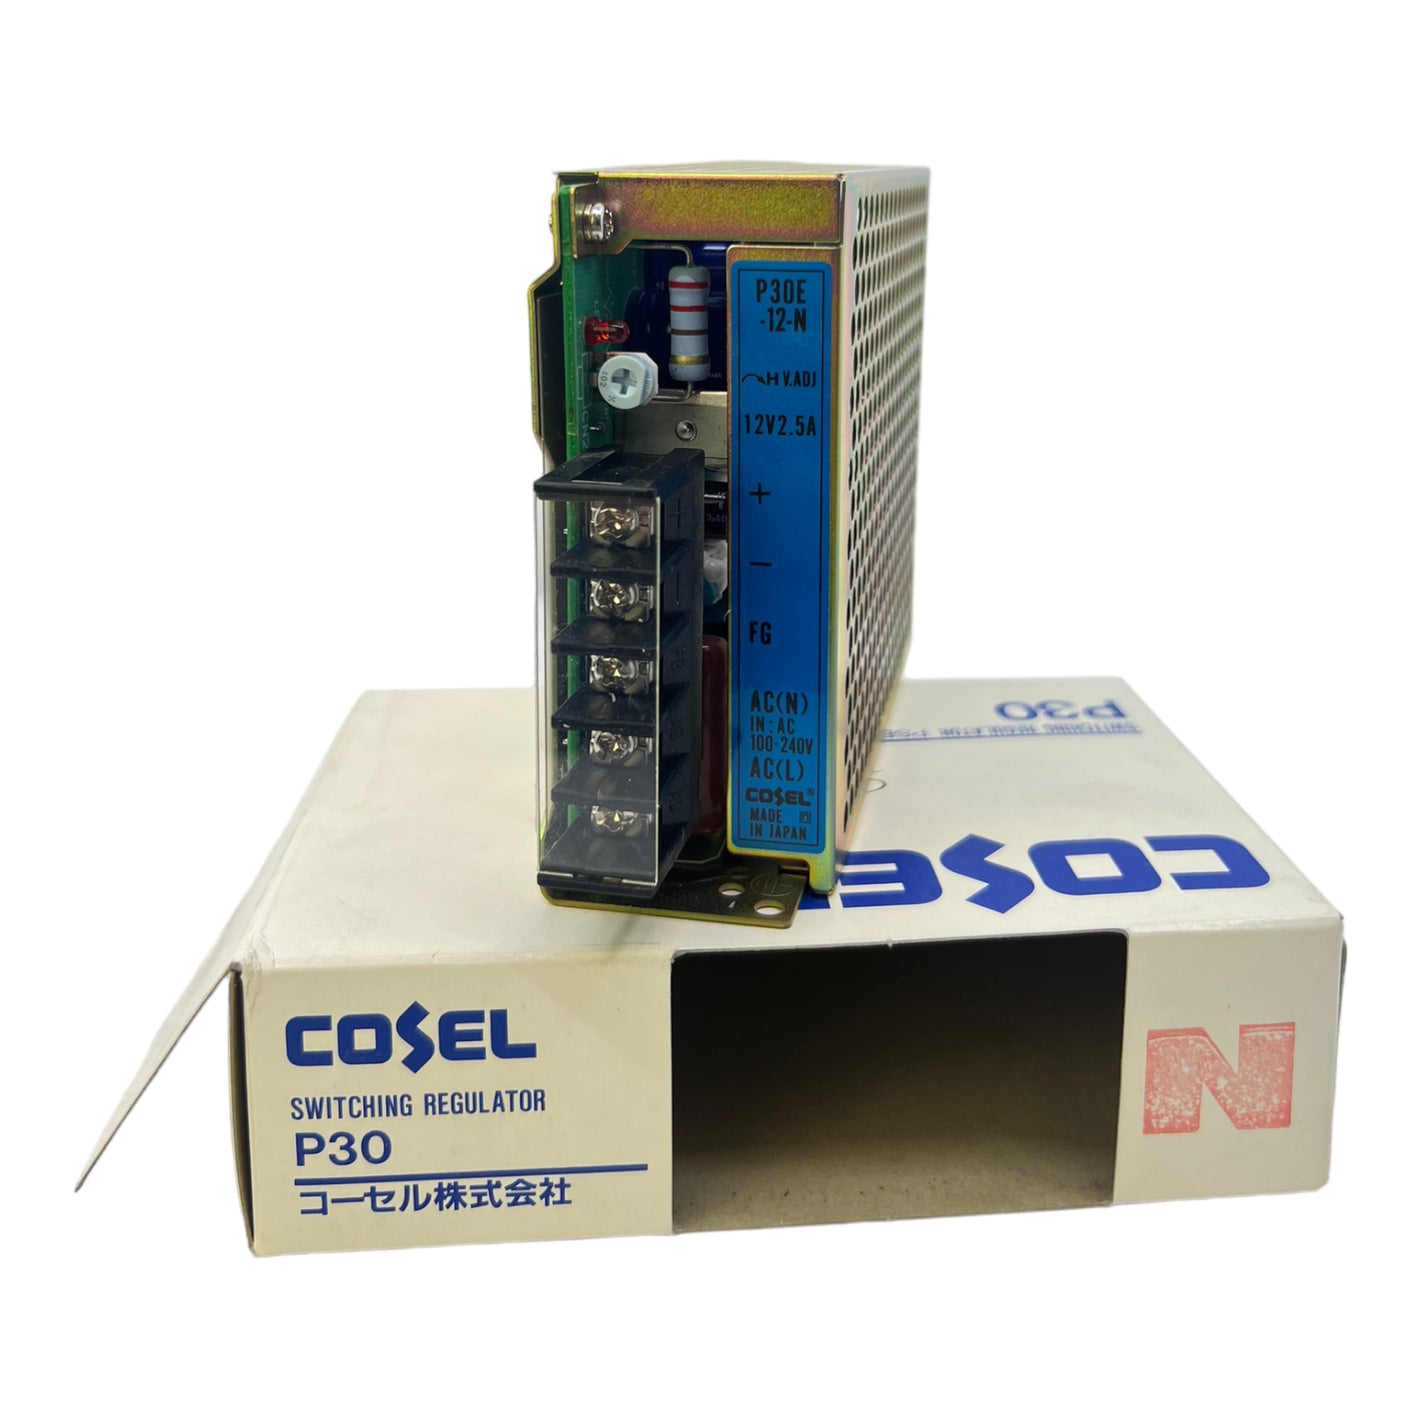 Cosel P30E-12 switching regulator 12V 2.5A AC 100-240V max0.7A 60-60Hz regulator 